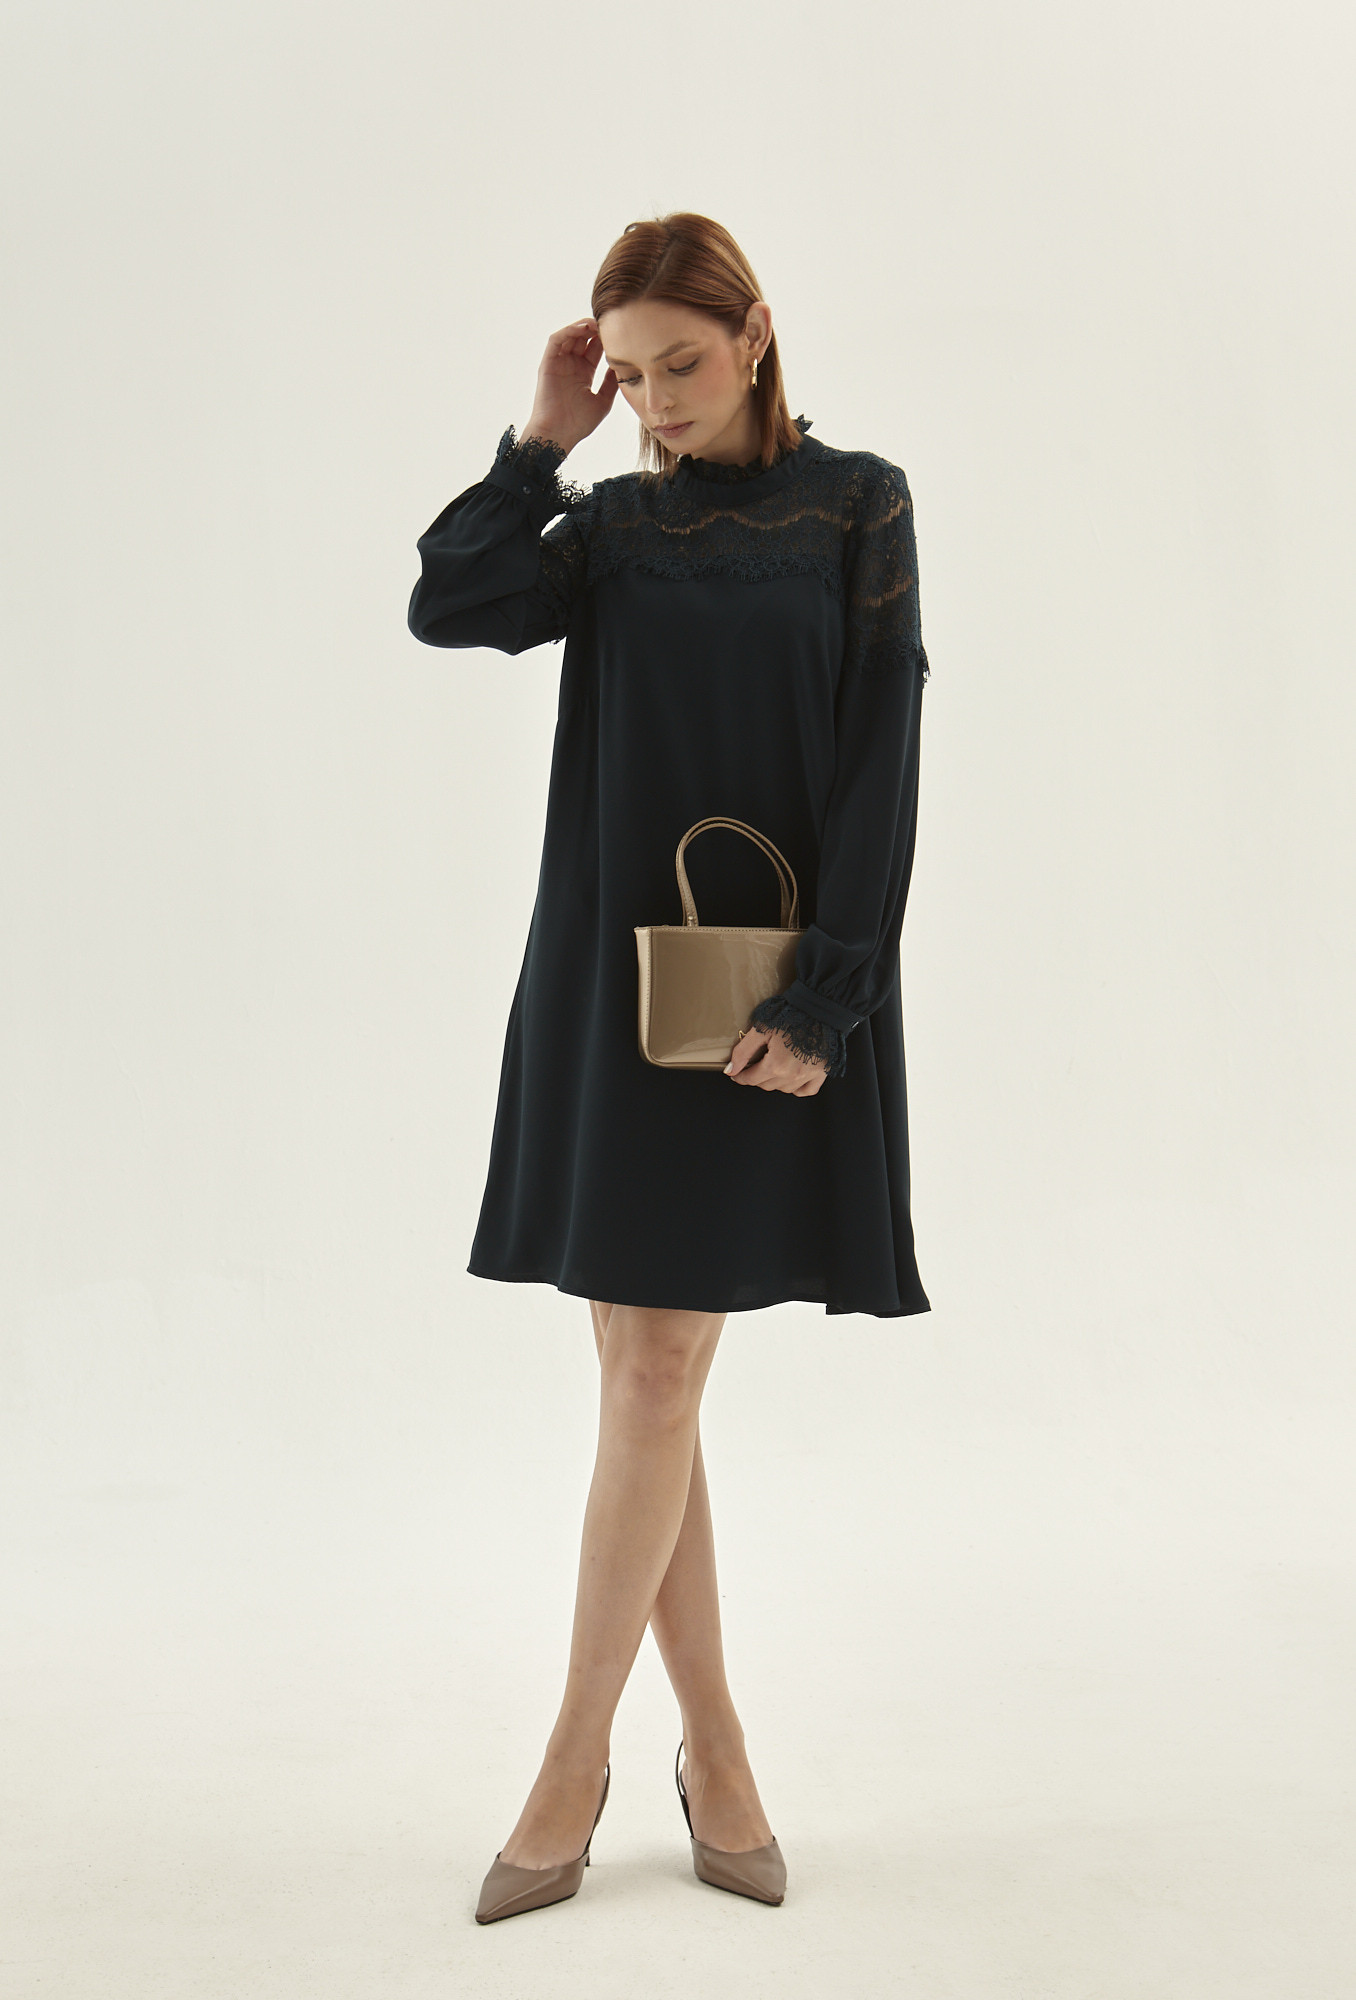 Monnari Šaty Černé šaty s krajkovým panelem Multi Turqoise 38